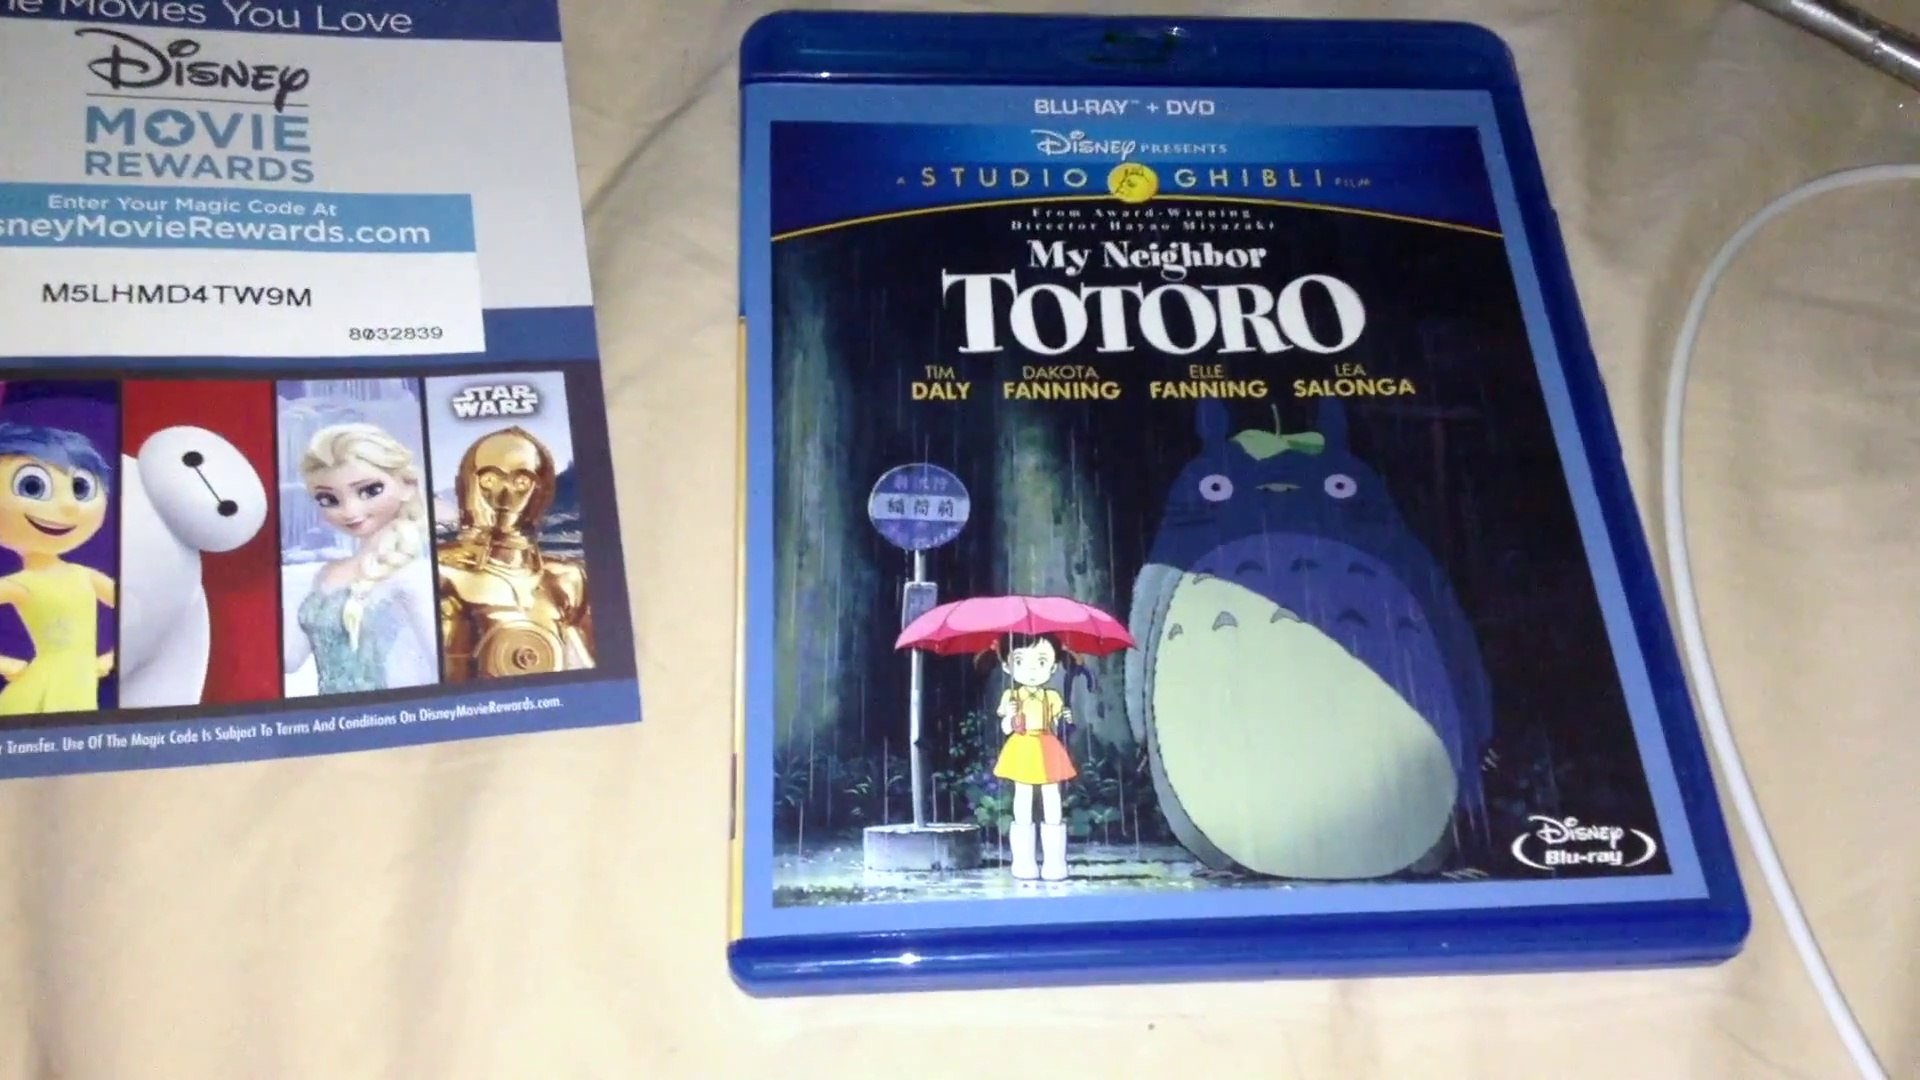 Mon Voisin Totoro: : DVD & Blu-ray